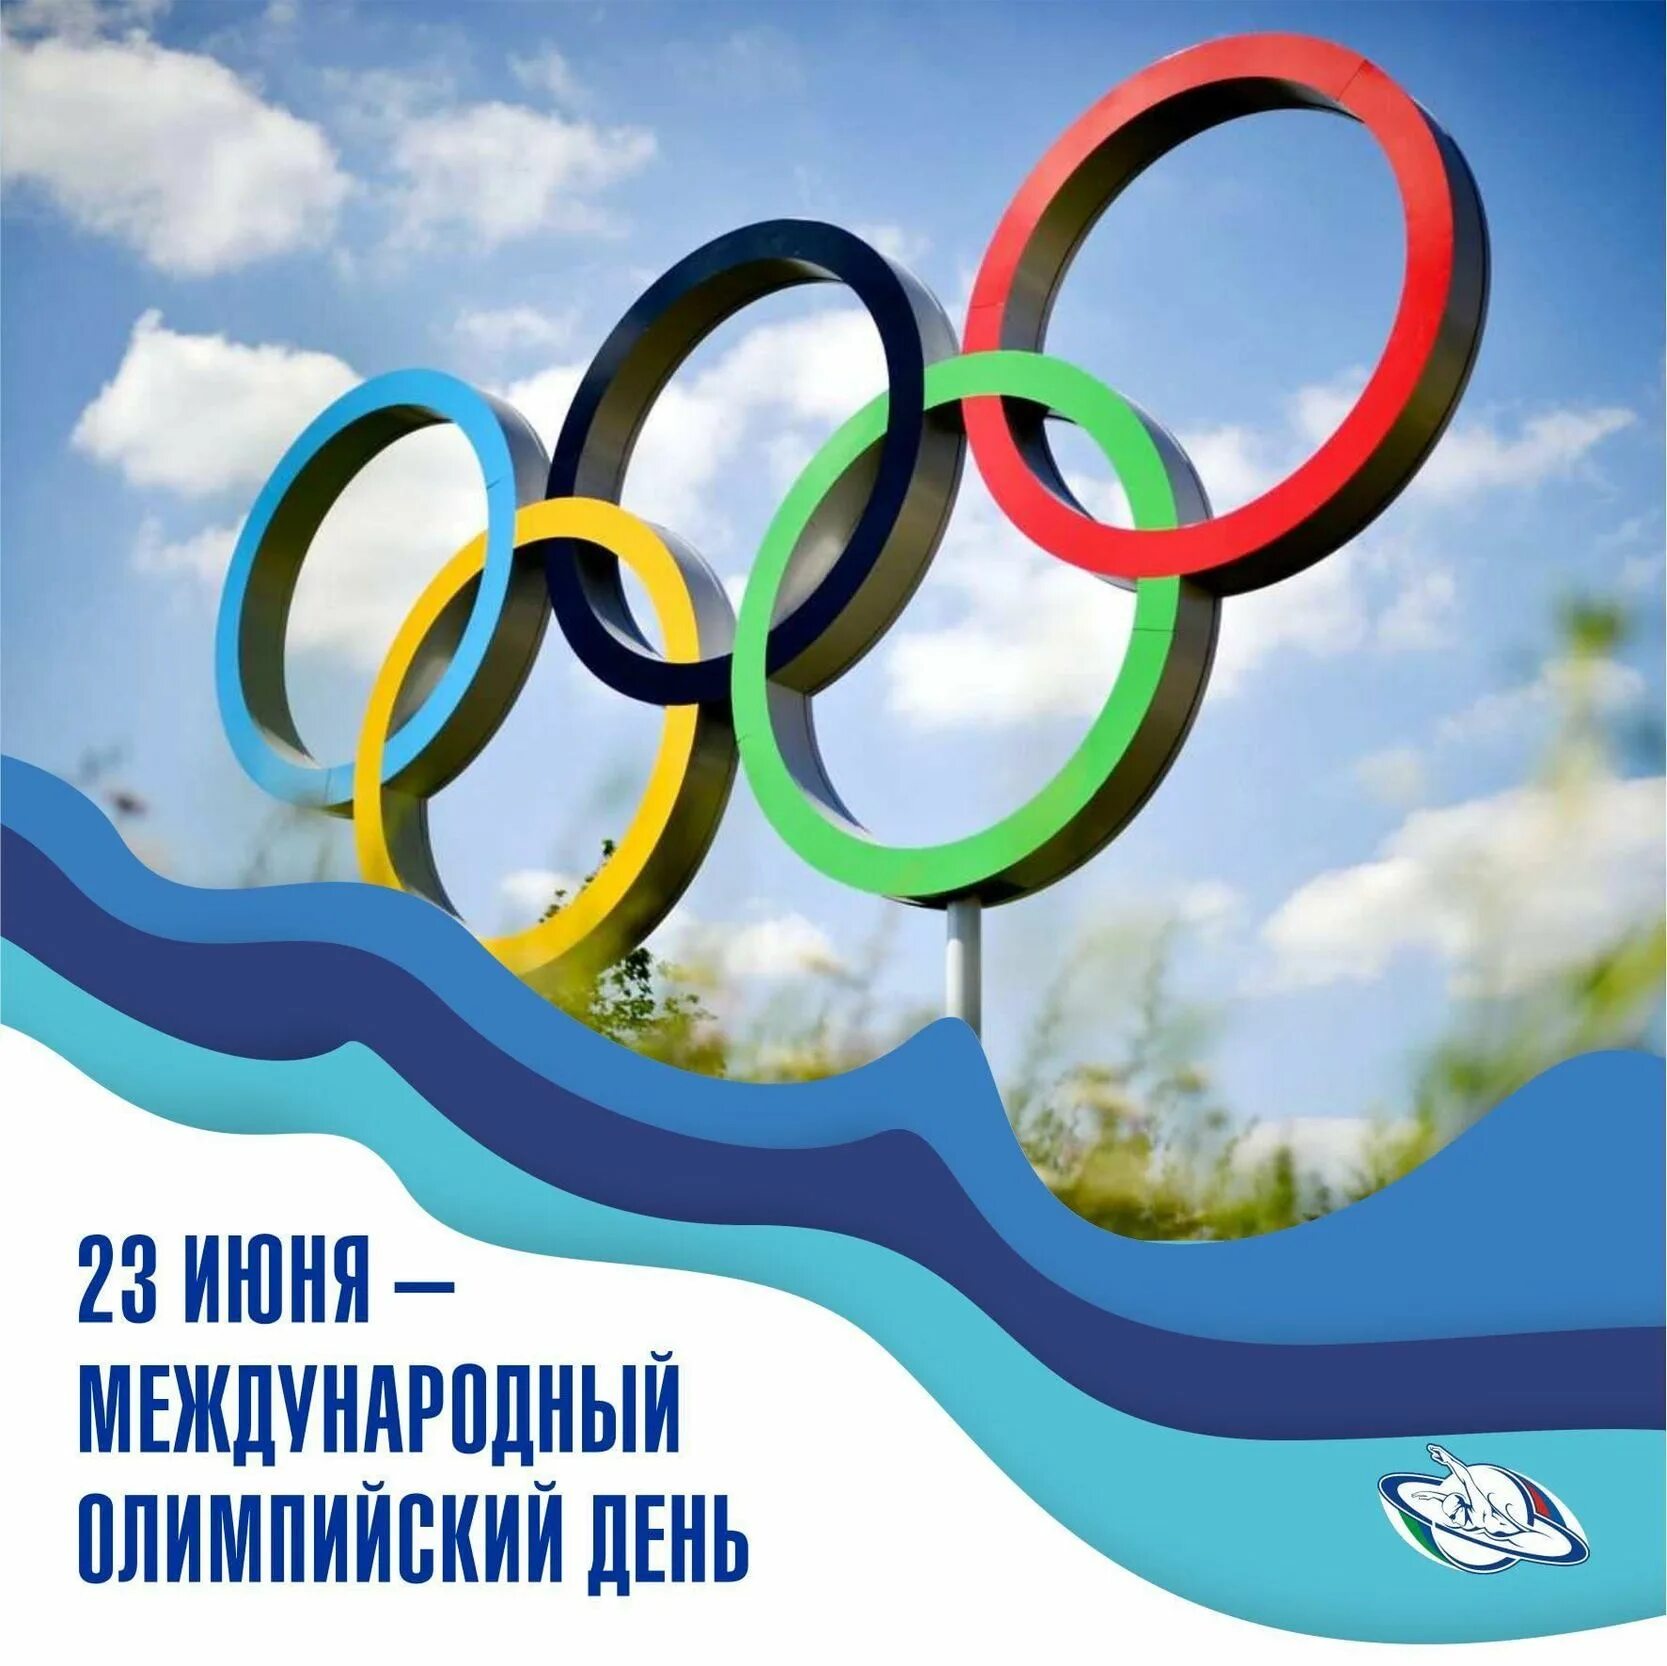 Международный Олимпийский день. Международныхолимпийскиц день. 23 Июня Международный Олимпийский день. День олимпийского движения. 23 июня 2020